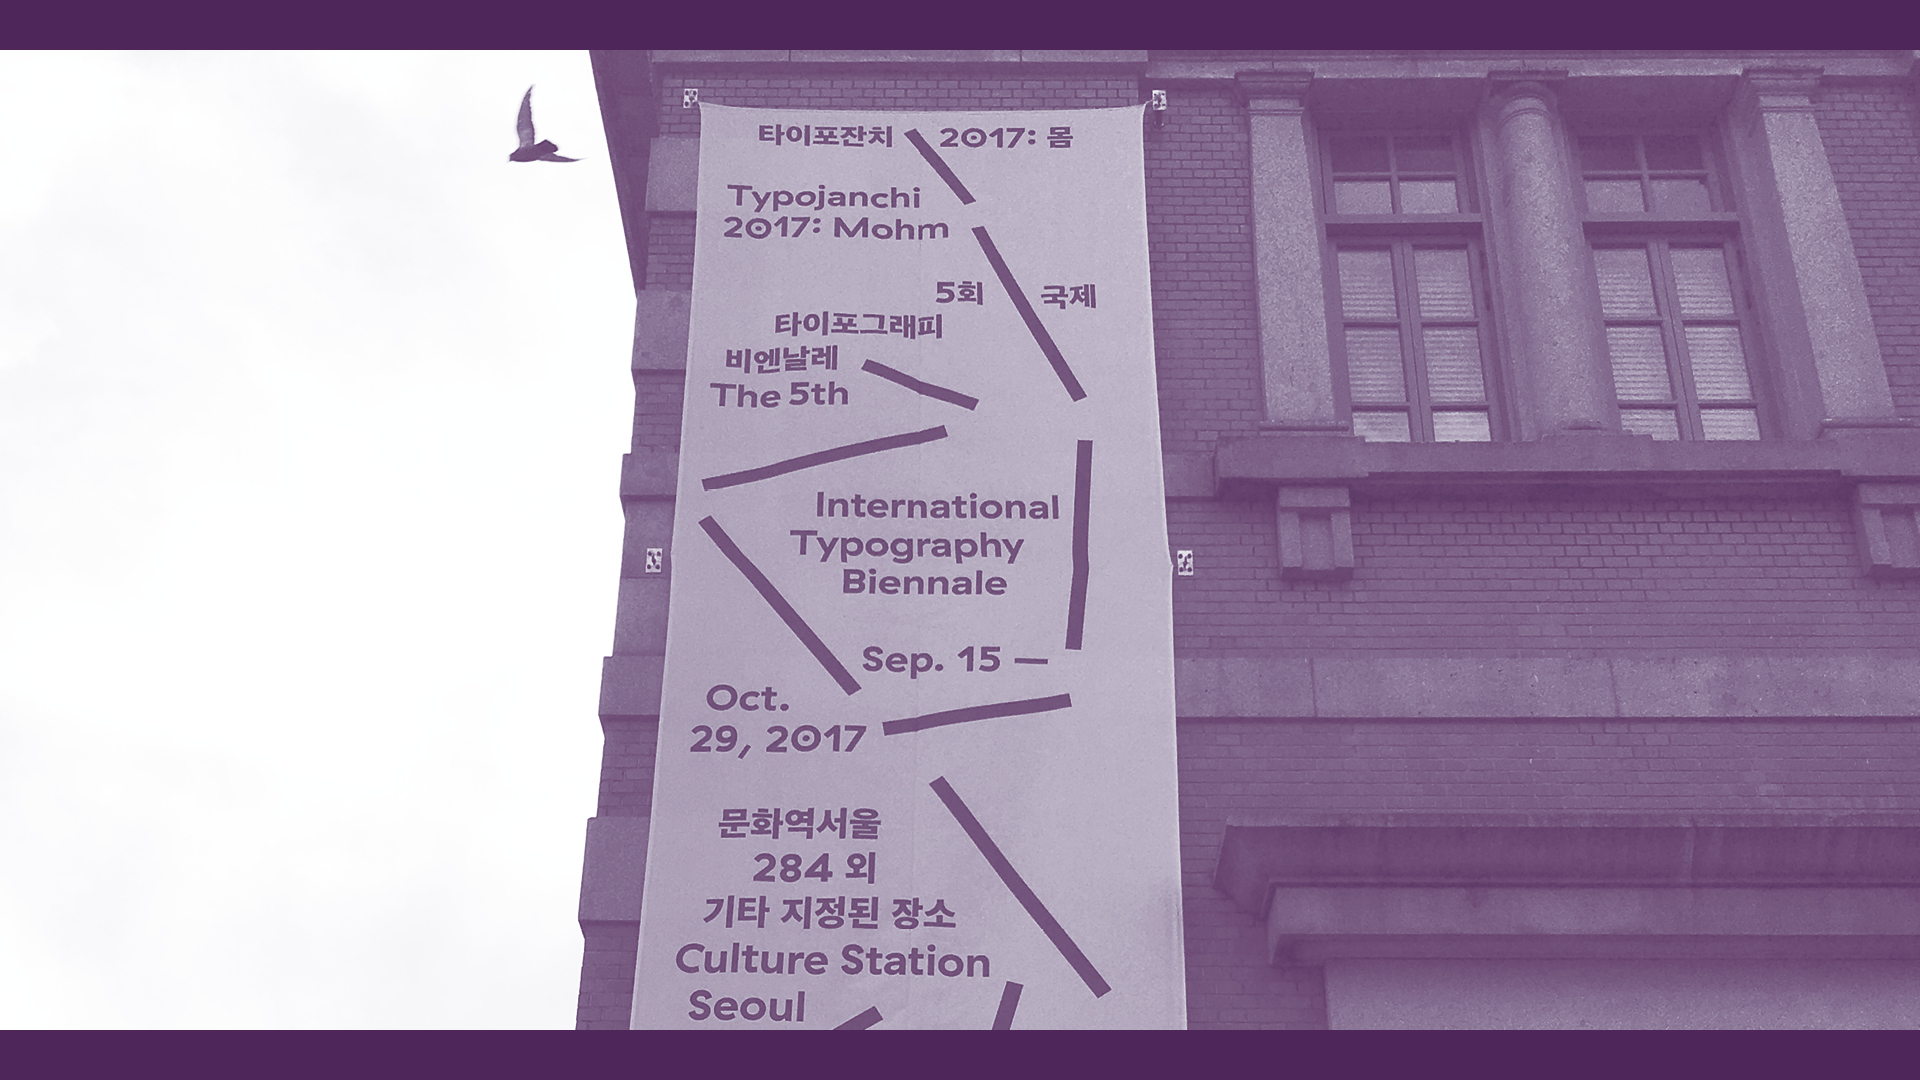 ソウル、Culture Station Seoul 284の外観と広告